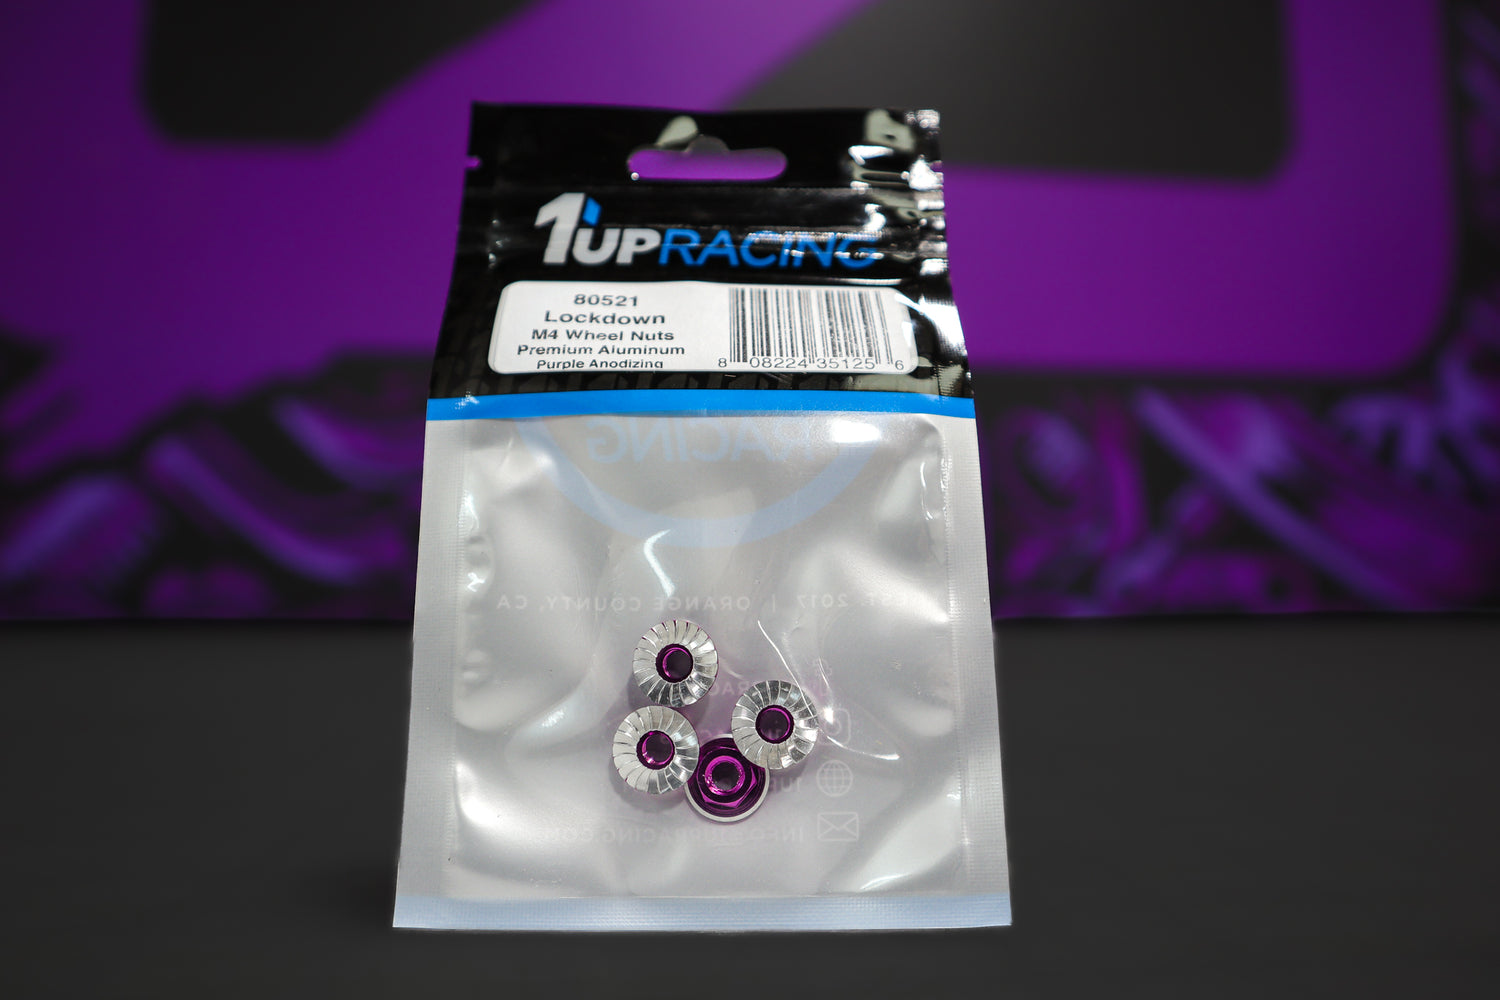 1Up Racing Lockdown M4 Wheel Nuts - Purple